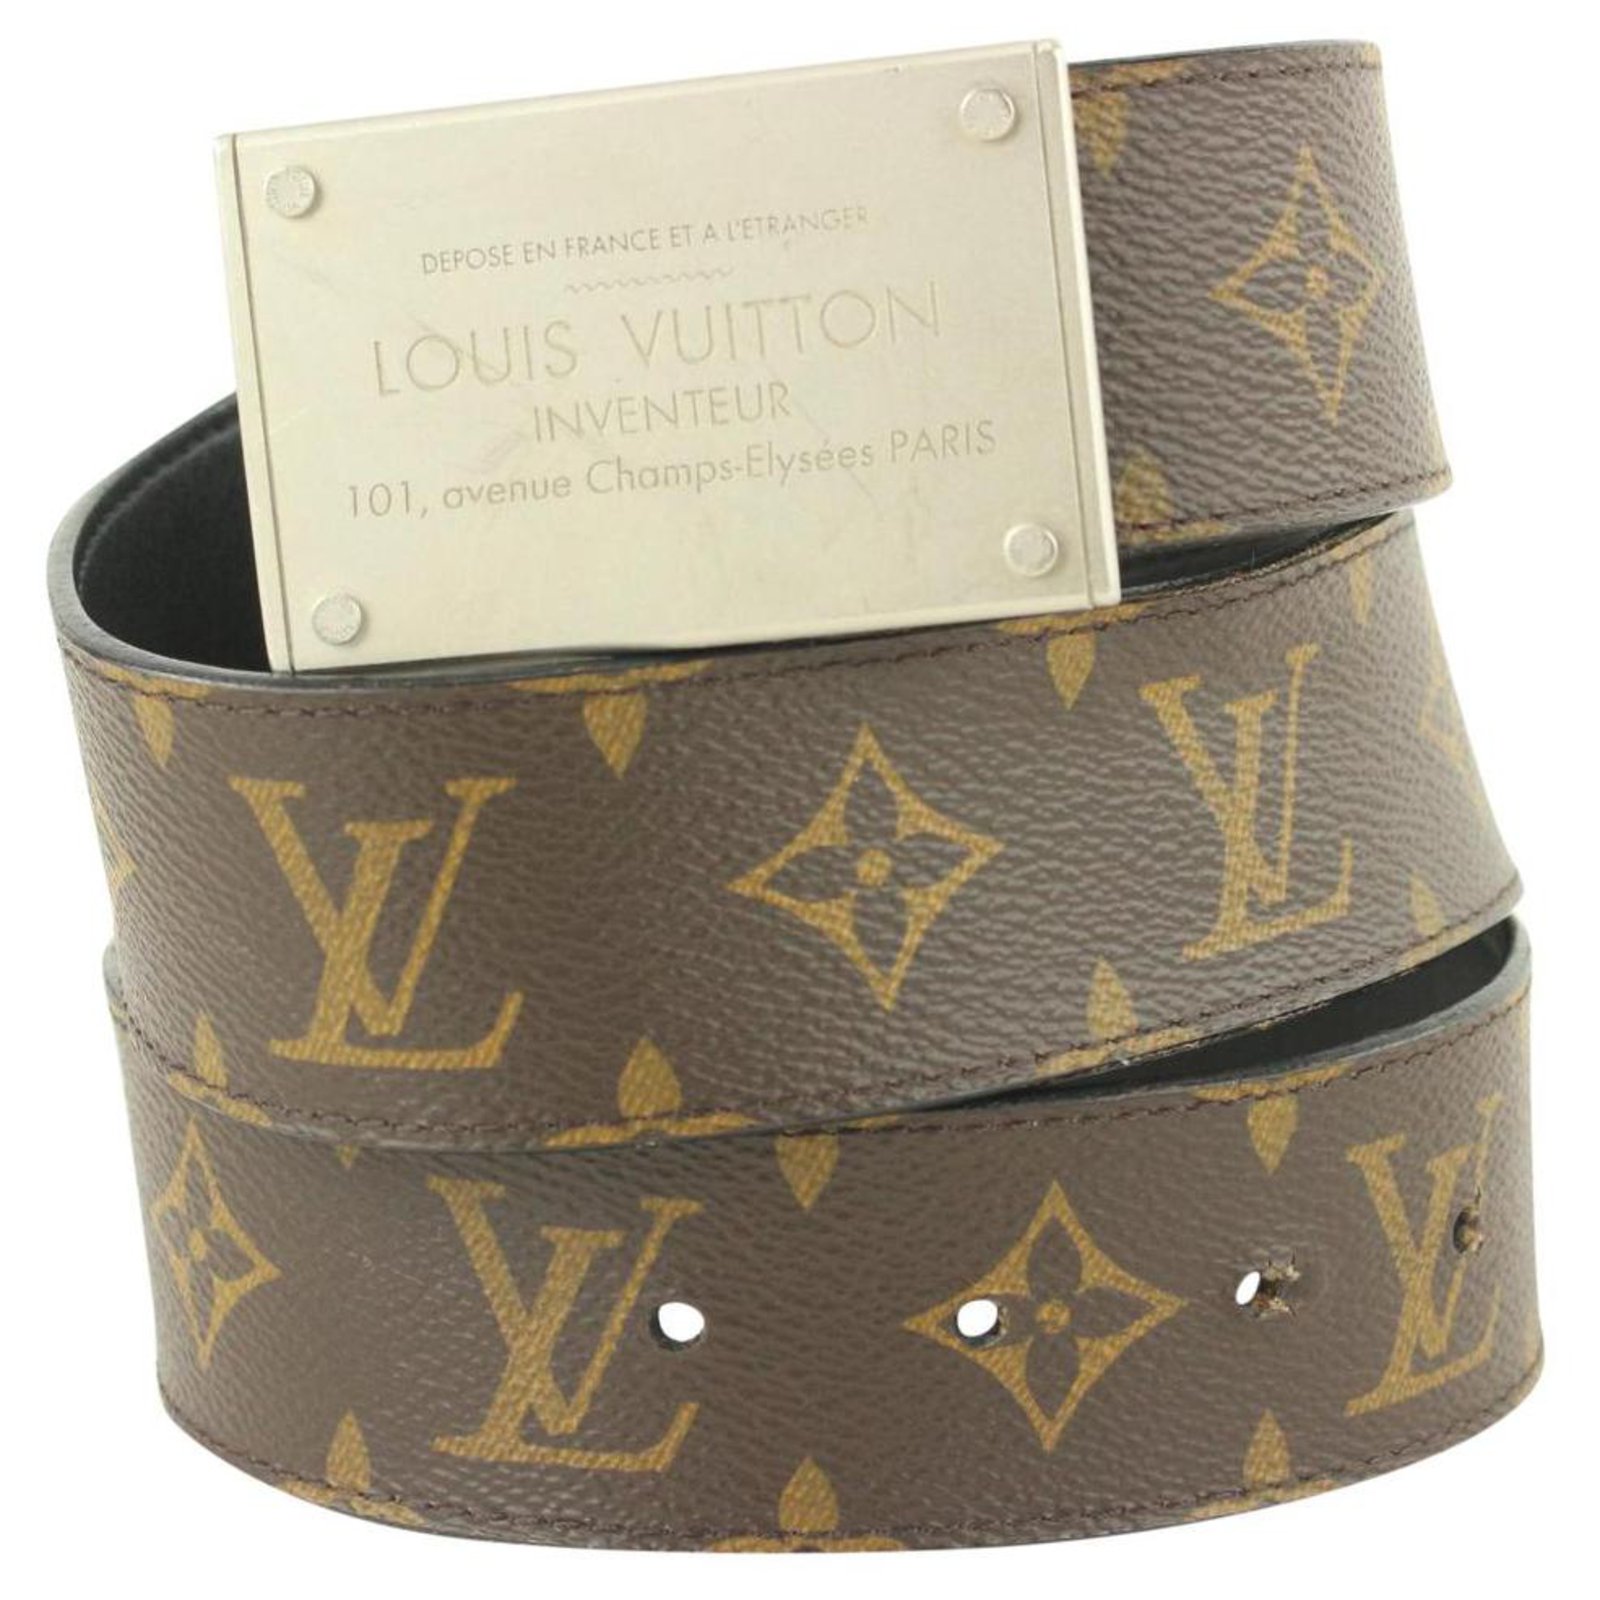 Thắt lưng Louis Vuitton Inventeur Paris Silver Size 90  TTA1900  Tony  Tú Authentic